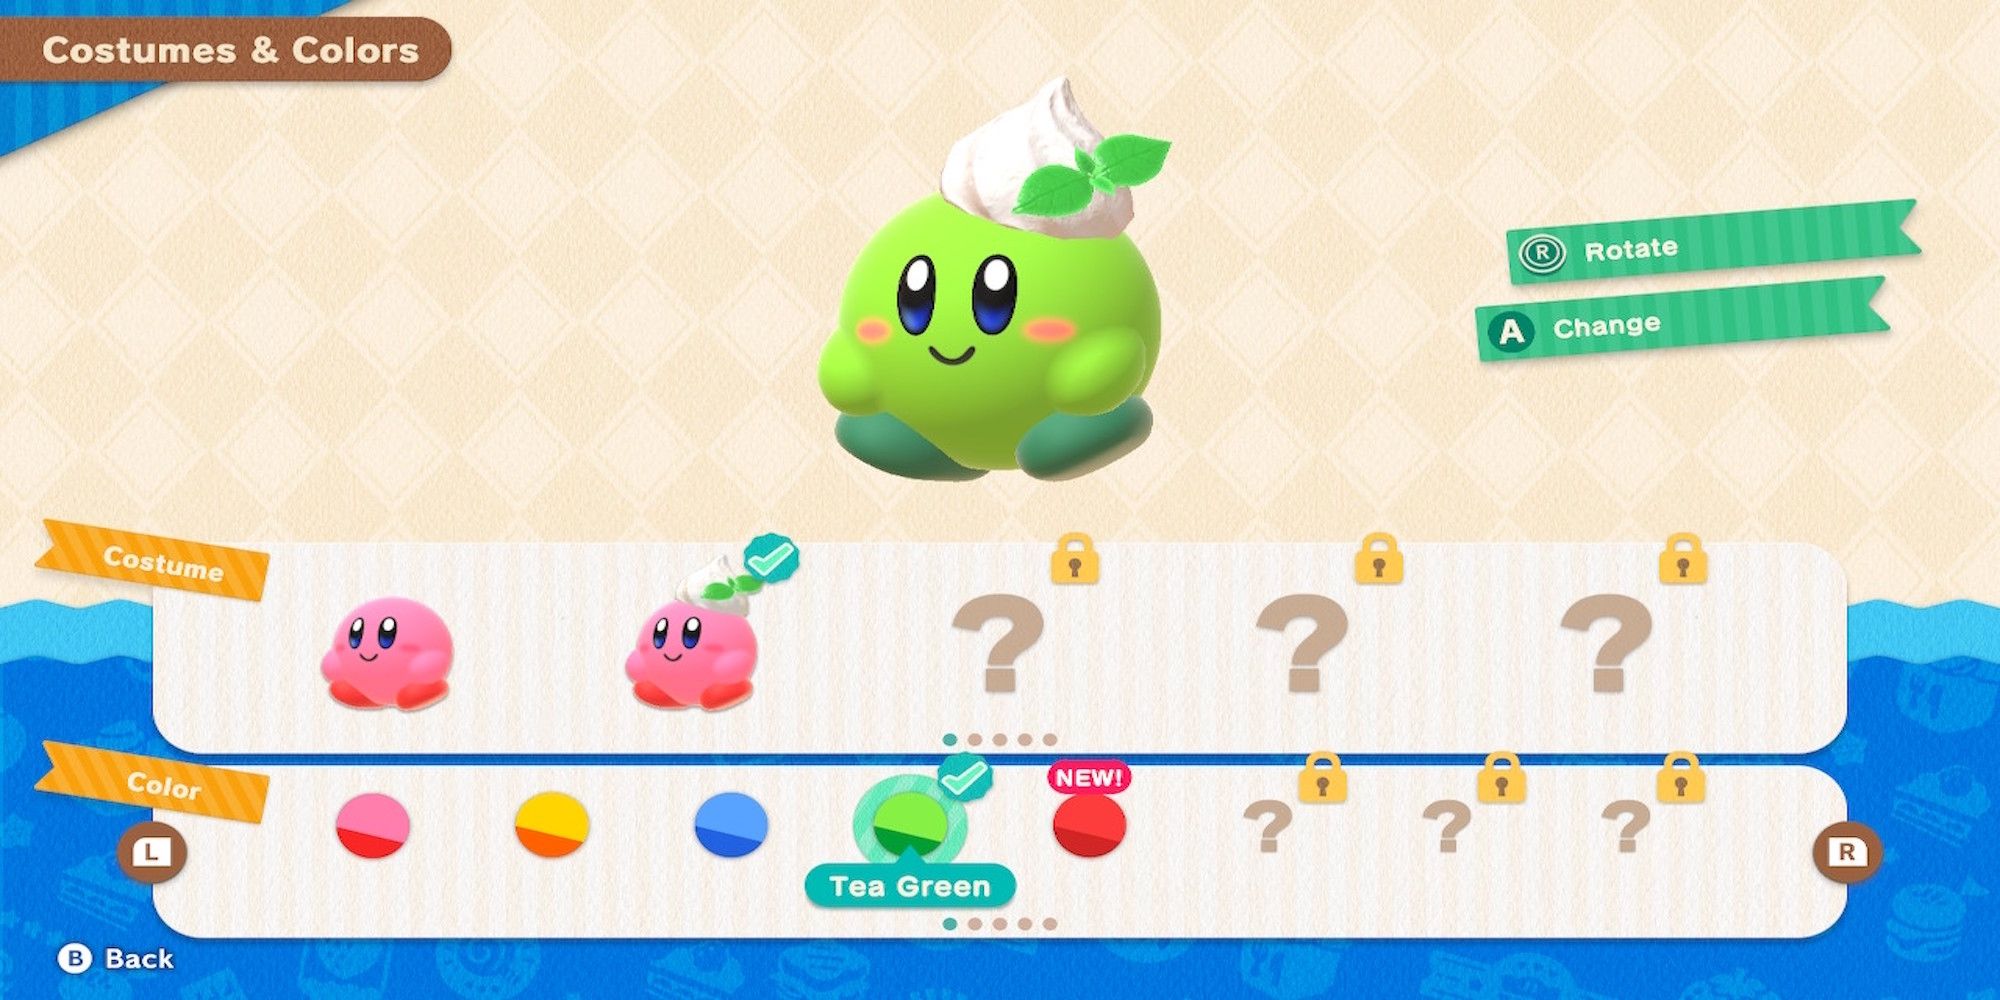 The costume menu in Kirby's Dream Buffet